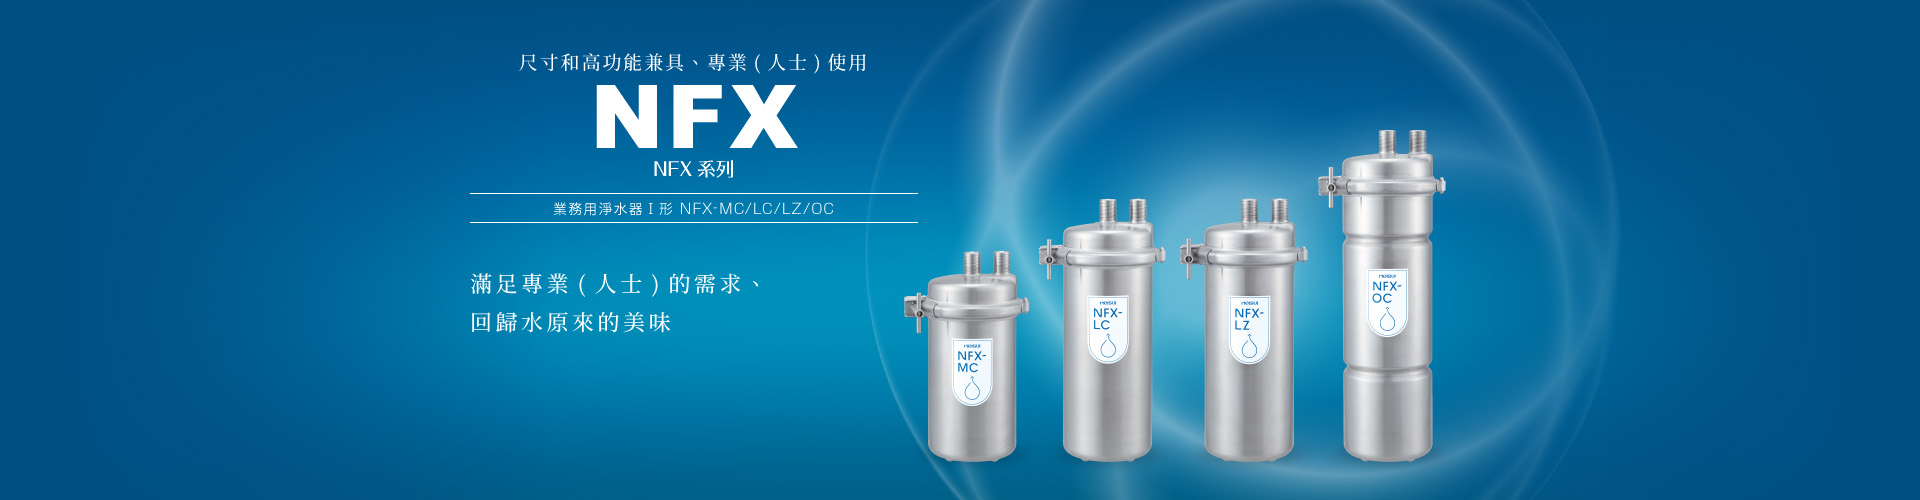 最初の メイスイ NFX-LC 業務用浄水器 浄水器、整水器